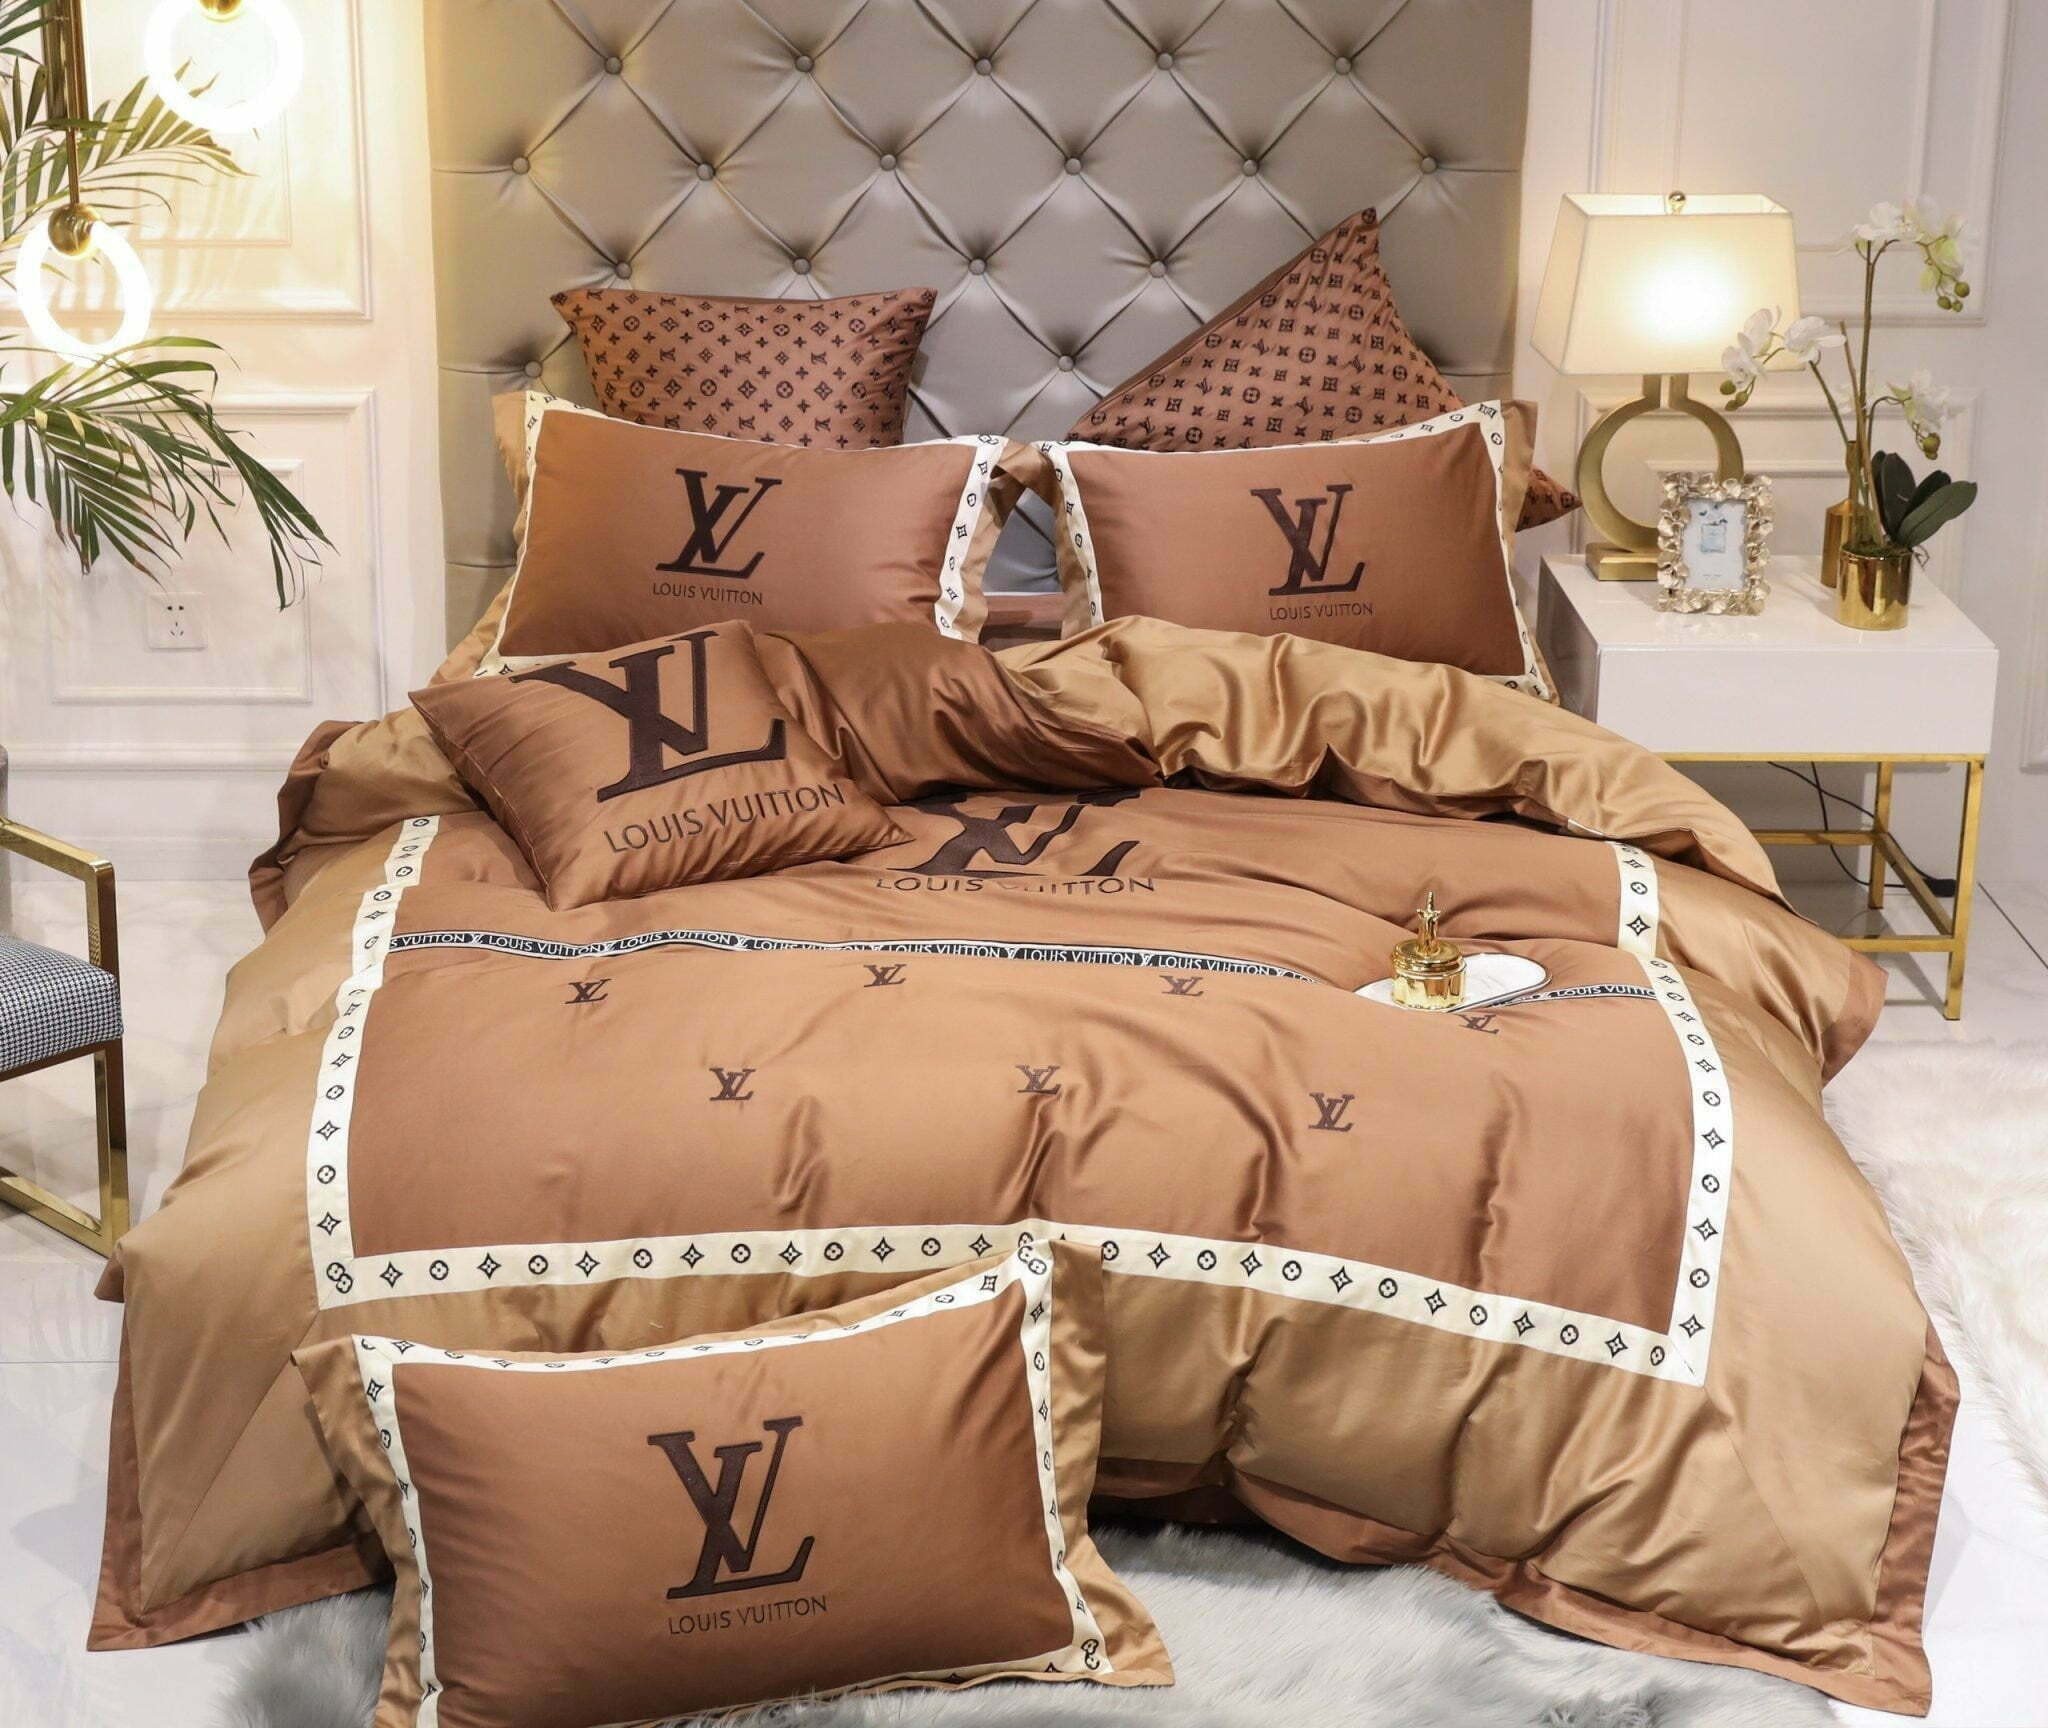 Louis Vuitton Bedding Sets 24